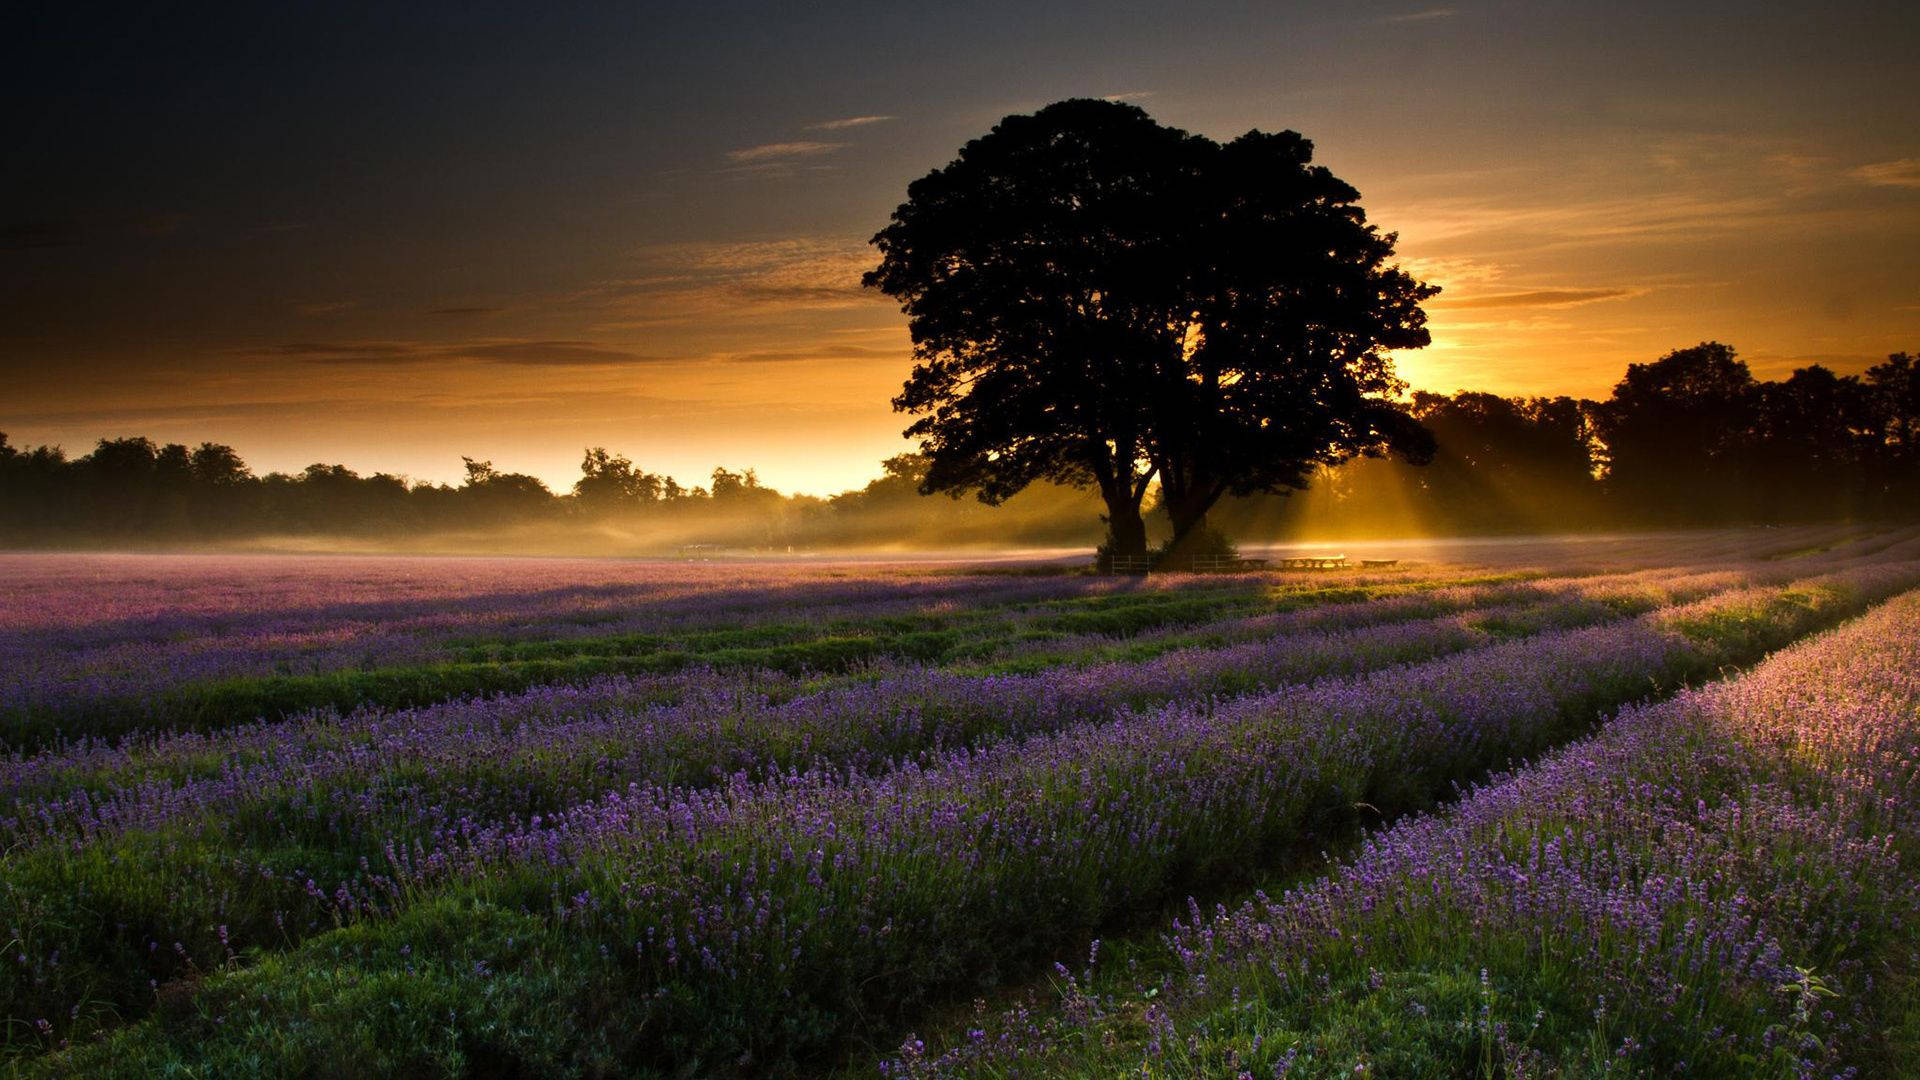 Lavender fields Wallpaper 4K, Purple, Foggy, Landscape, Tree